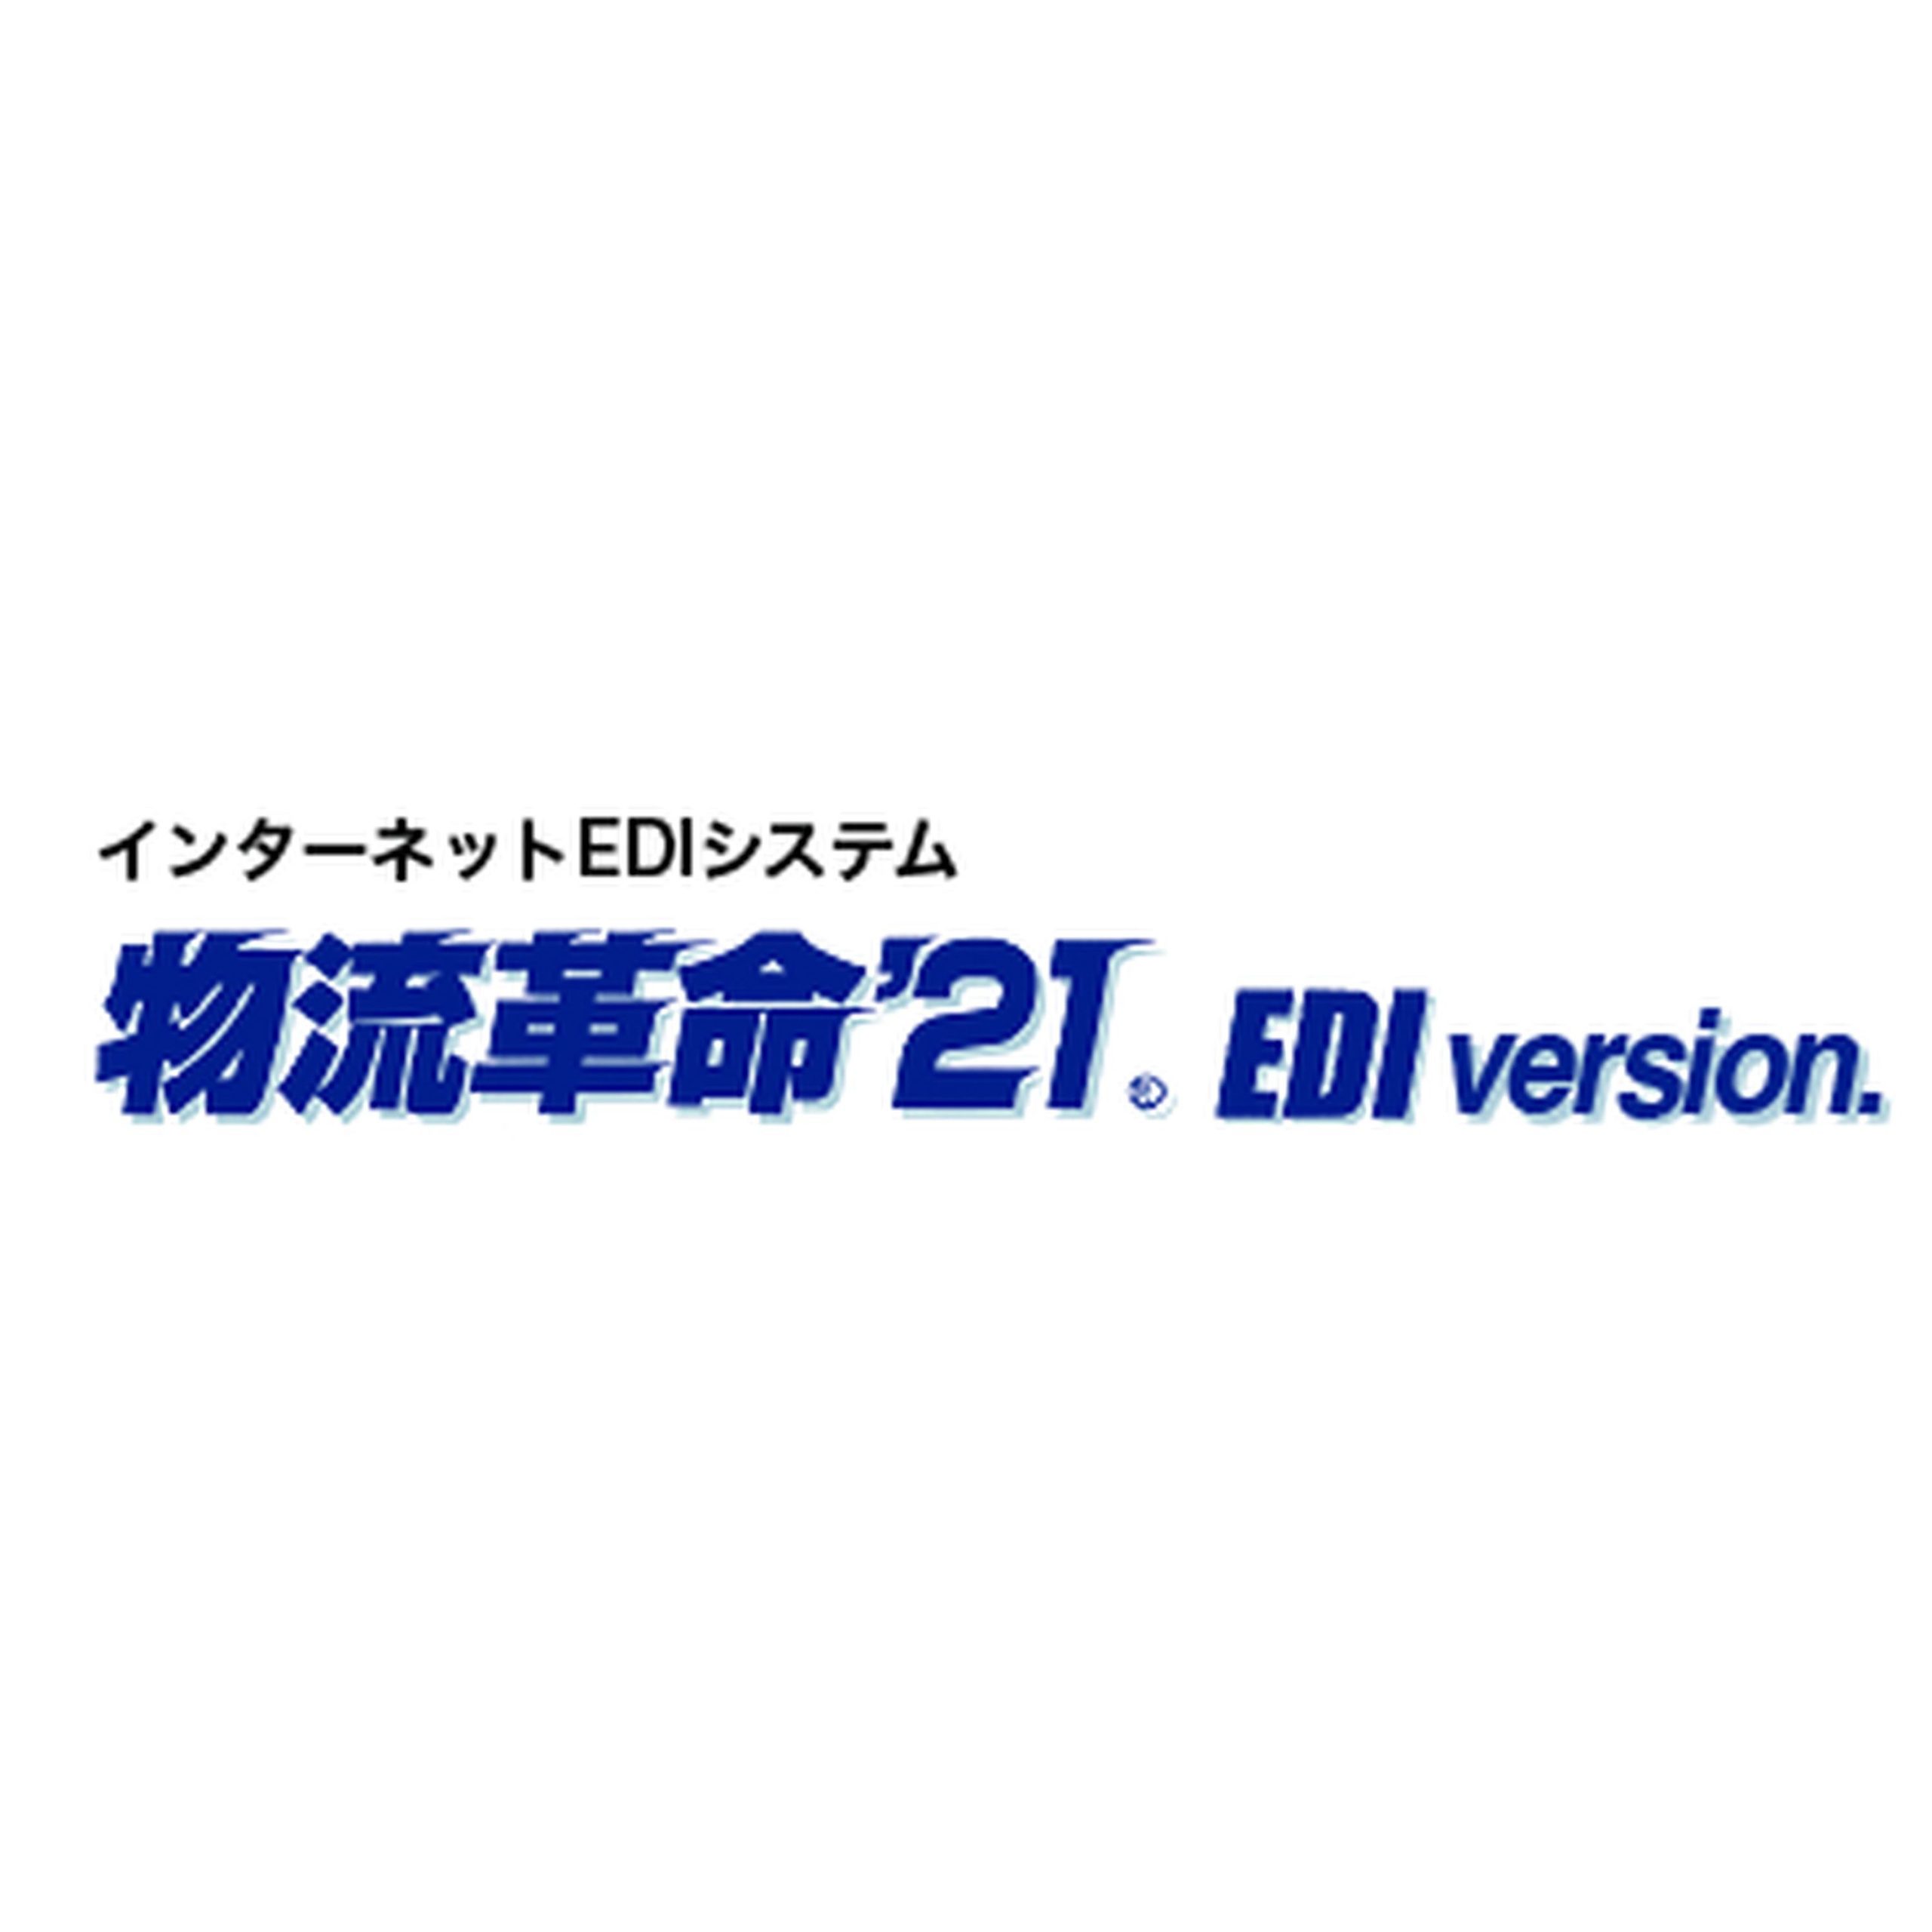 インターネットEDIシステム　物流革命’21 EDI version.